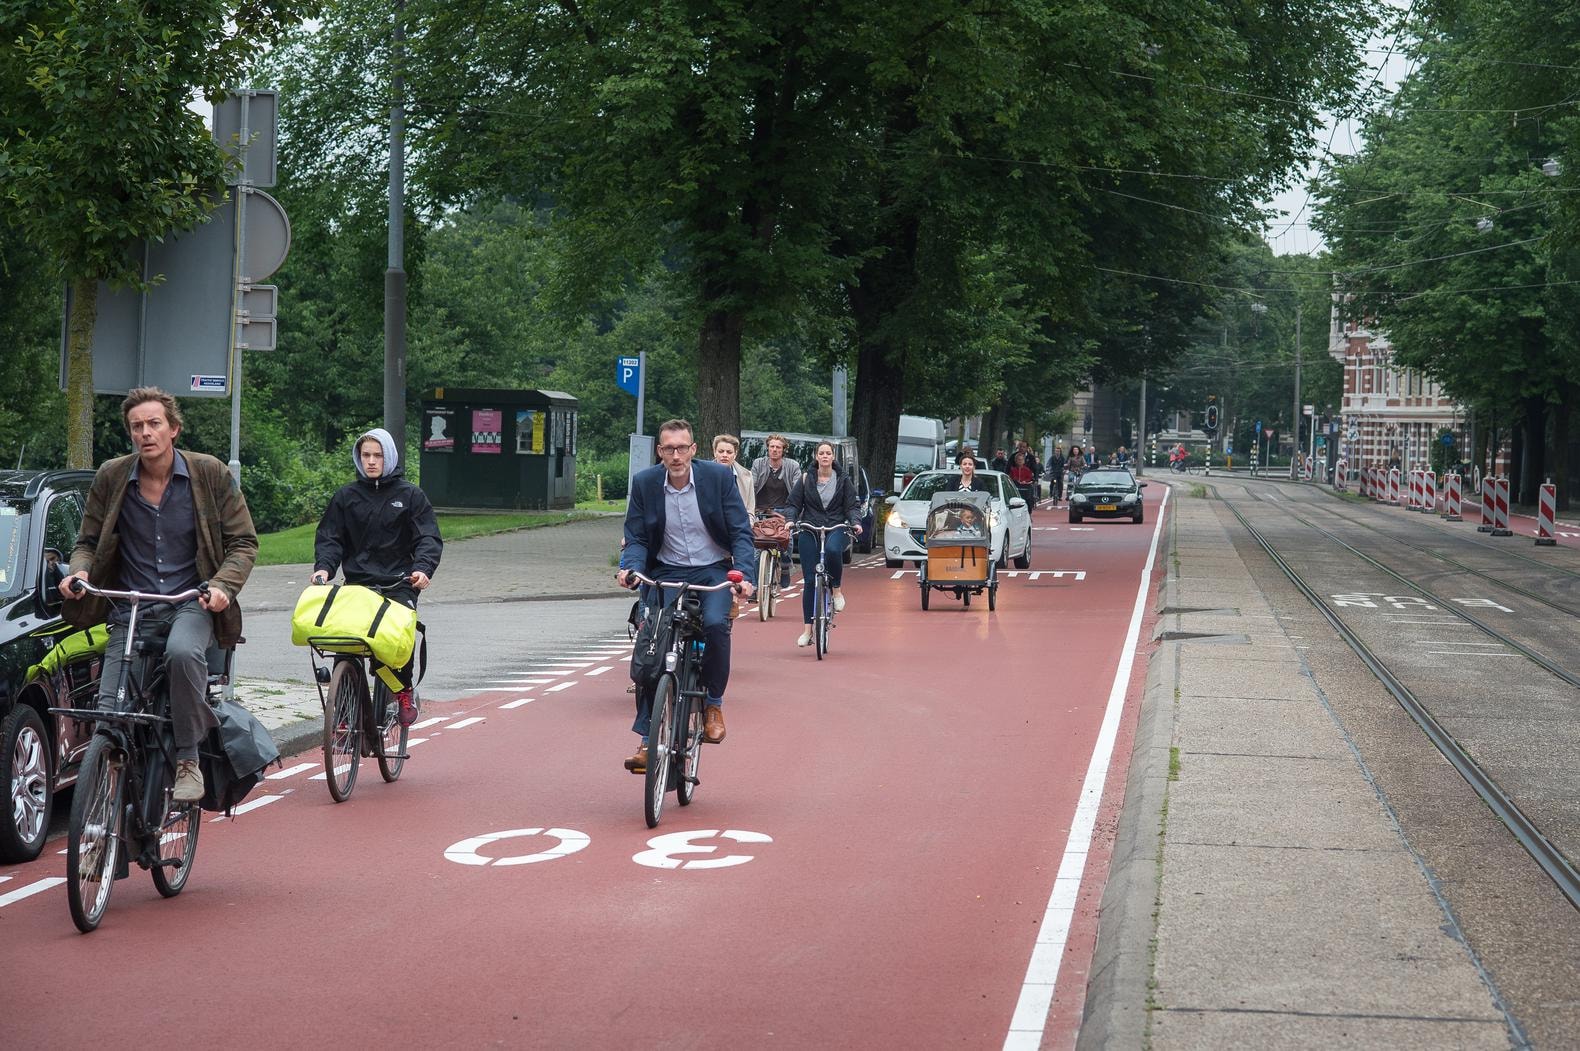 Helft van de Nederlanders: maximumsnelheid bebouwde kom van 50 naar 30